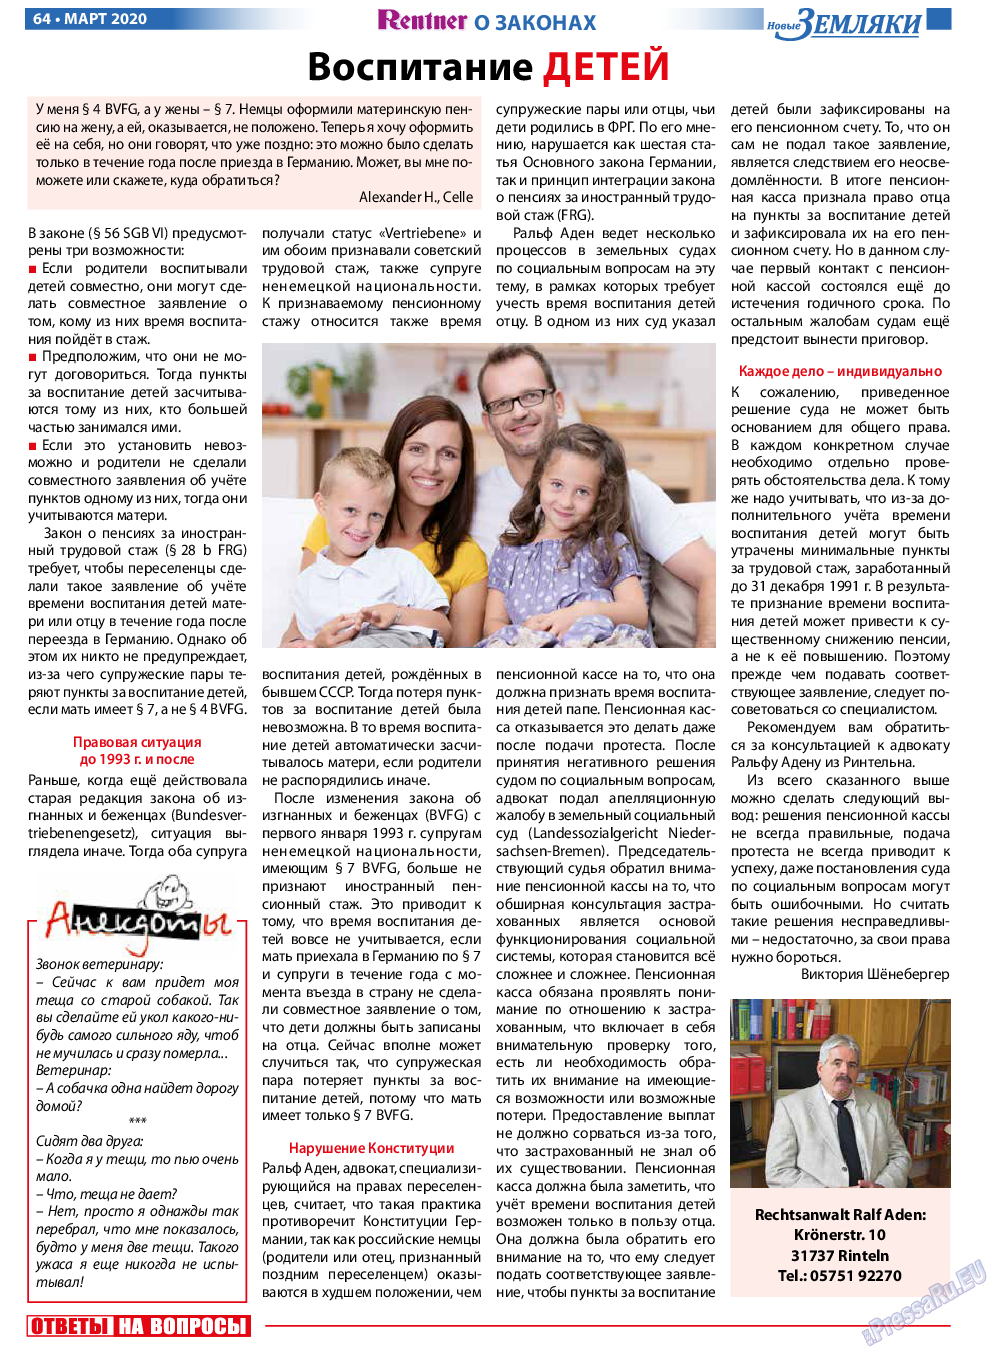 Новые Земляки, газета. 2020 №3 стр.64